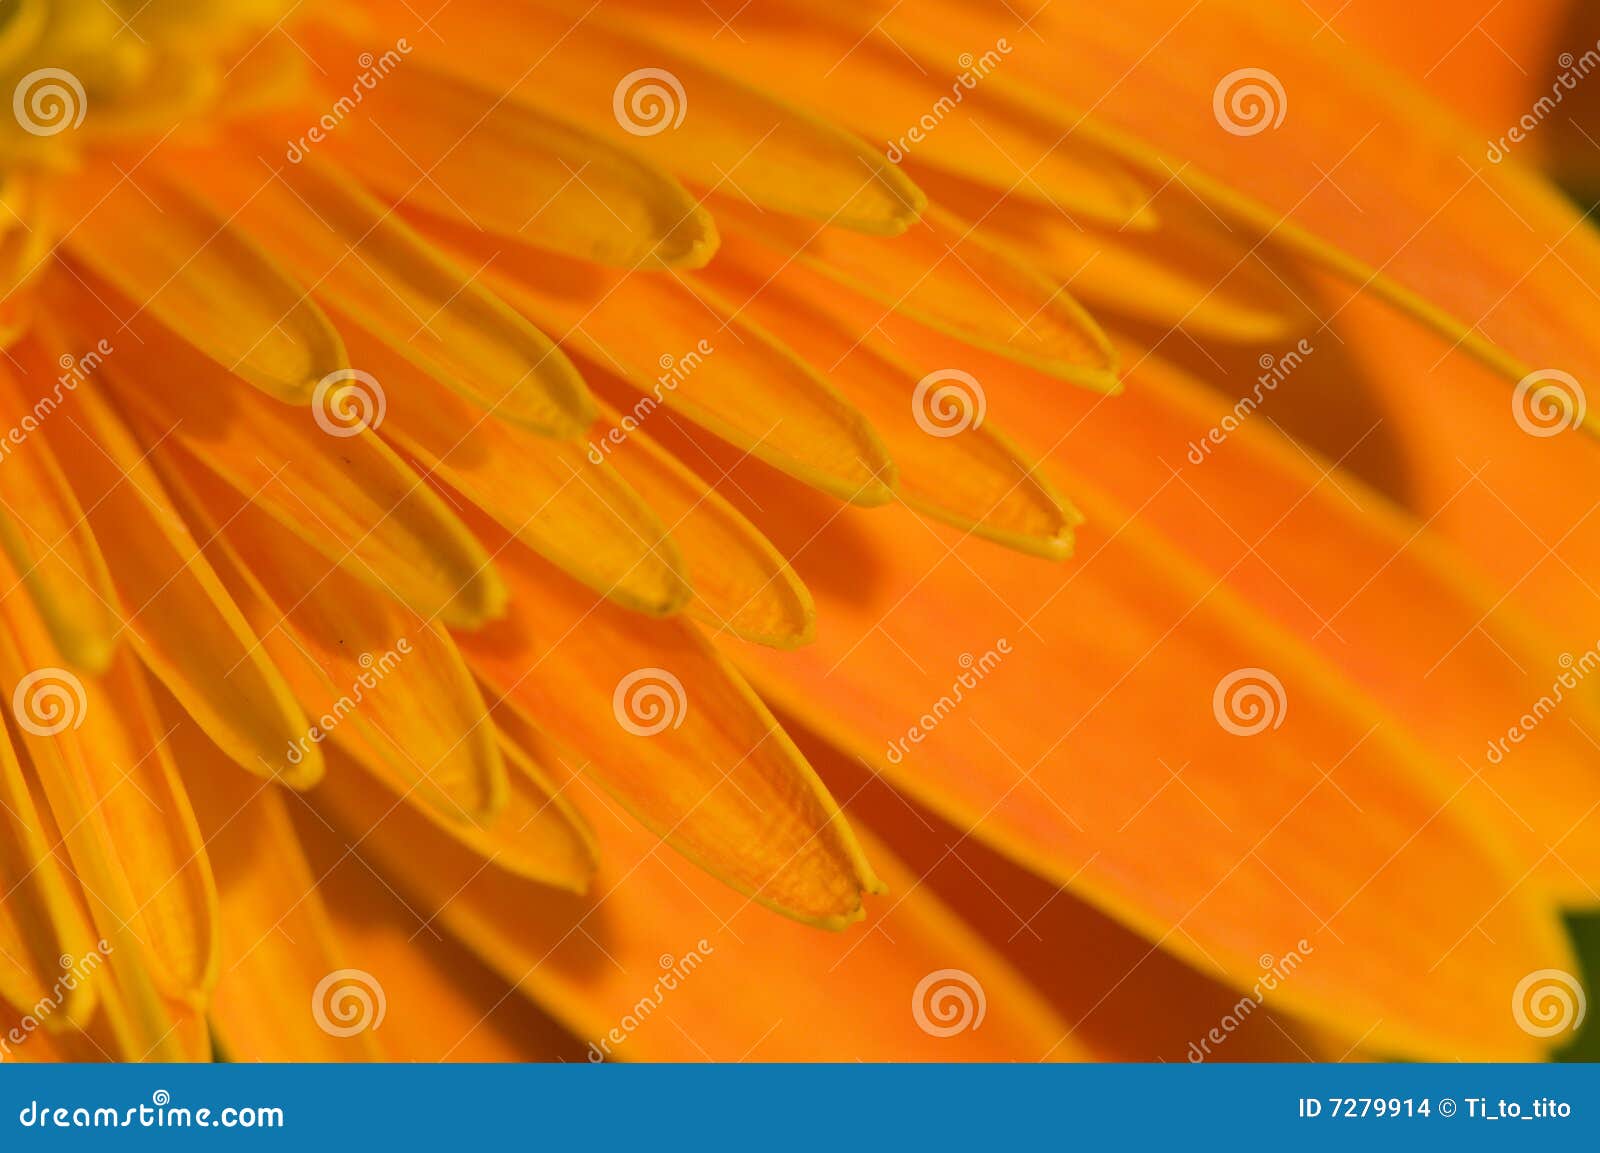 petal of orange marguerite